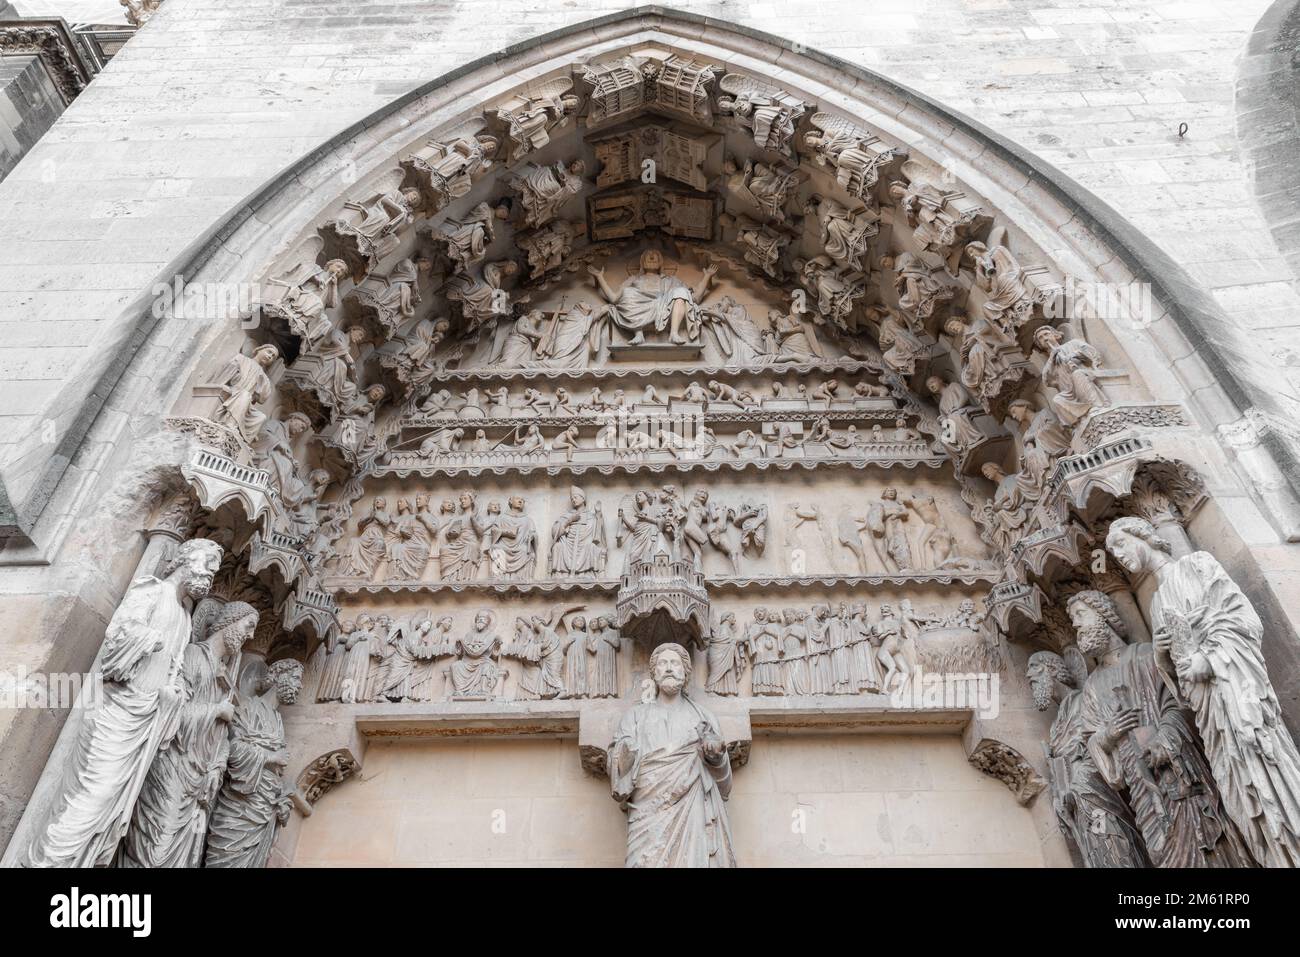 Les statues de la cathédrale de Reims ou de Reims de notre-Dame datant du 13th siècle, fortement endommagées pendant la première Guerre mondiale mais admirablement restaurées, sont l'une des Mo Banque D'Images